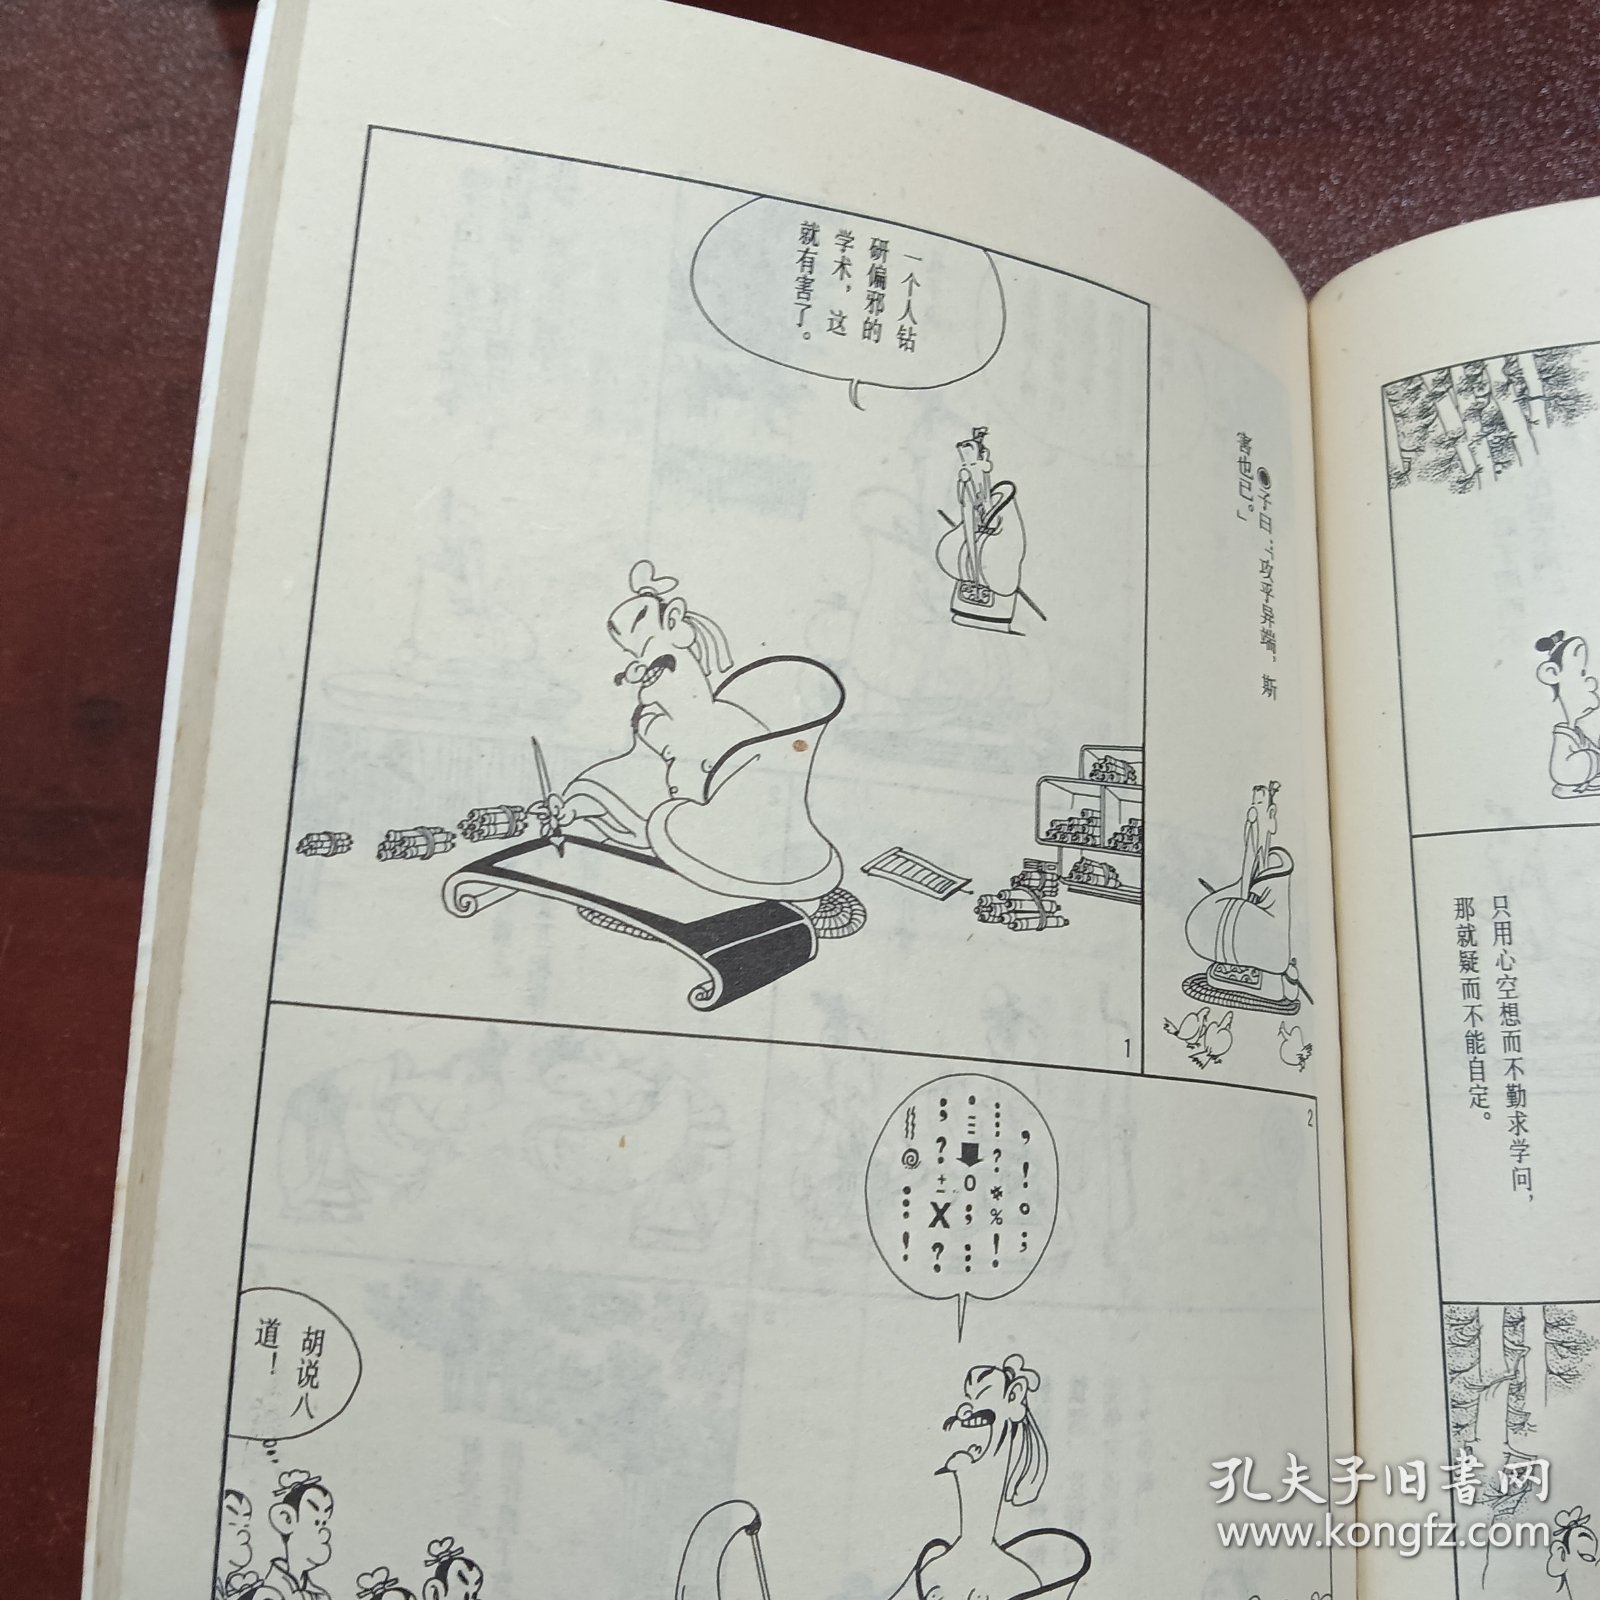 蔡志忠漫画:论语 儒者的诤言